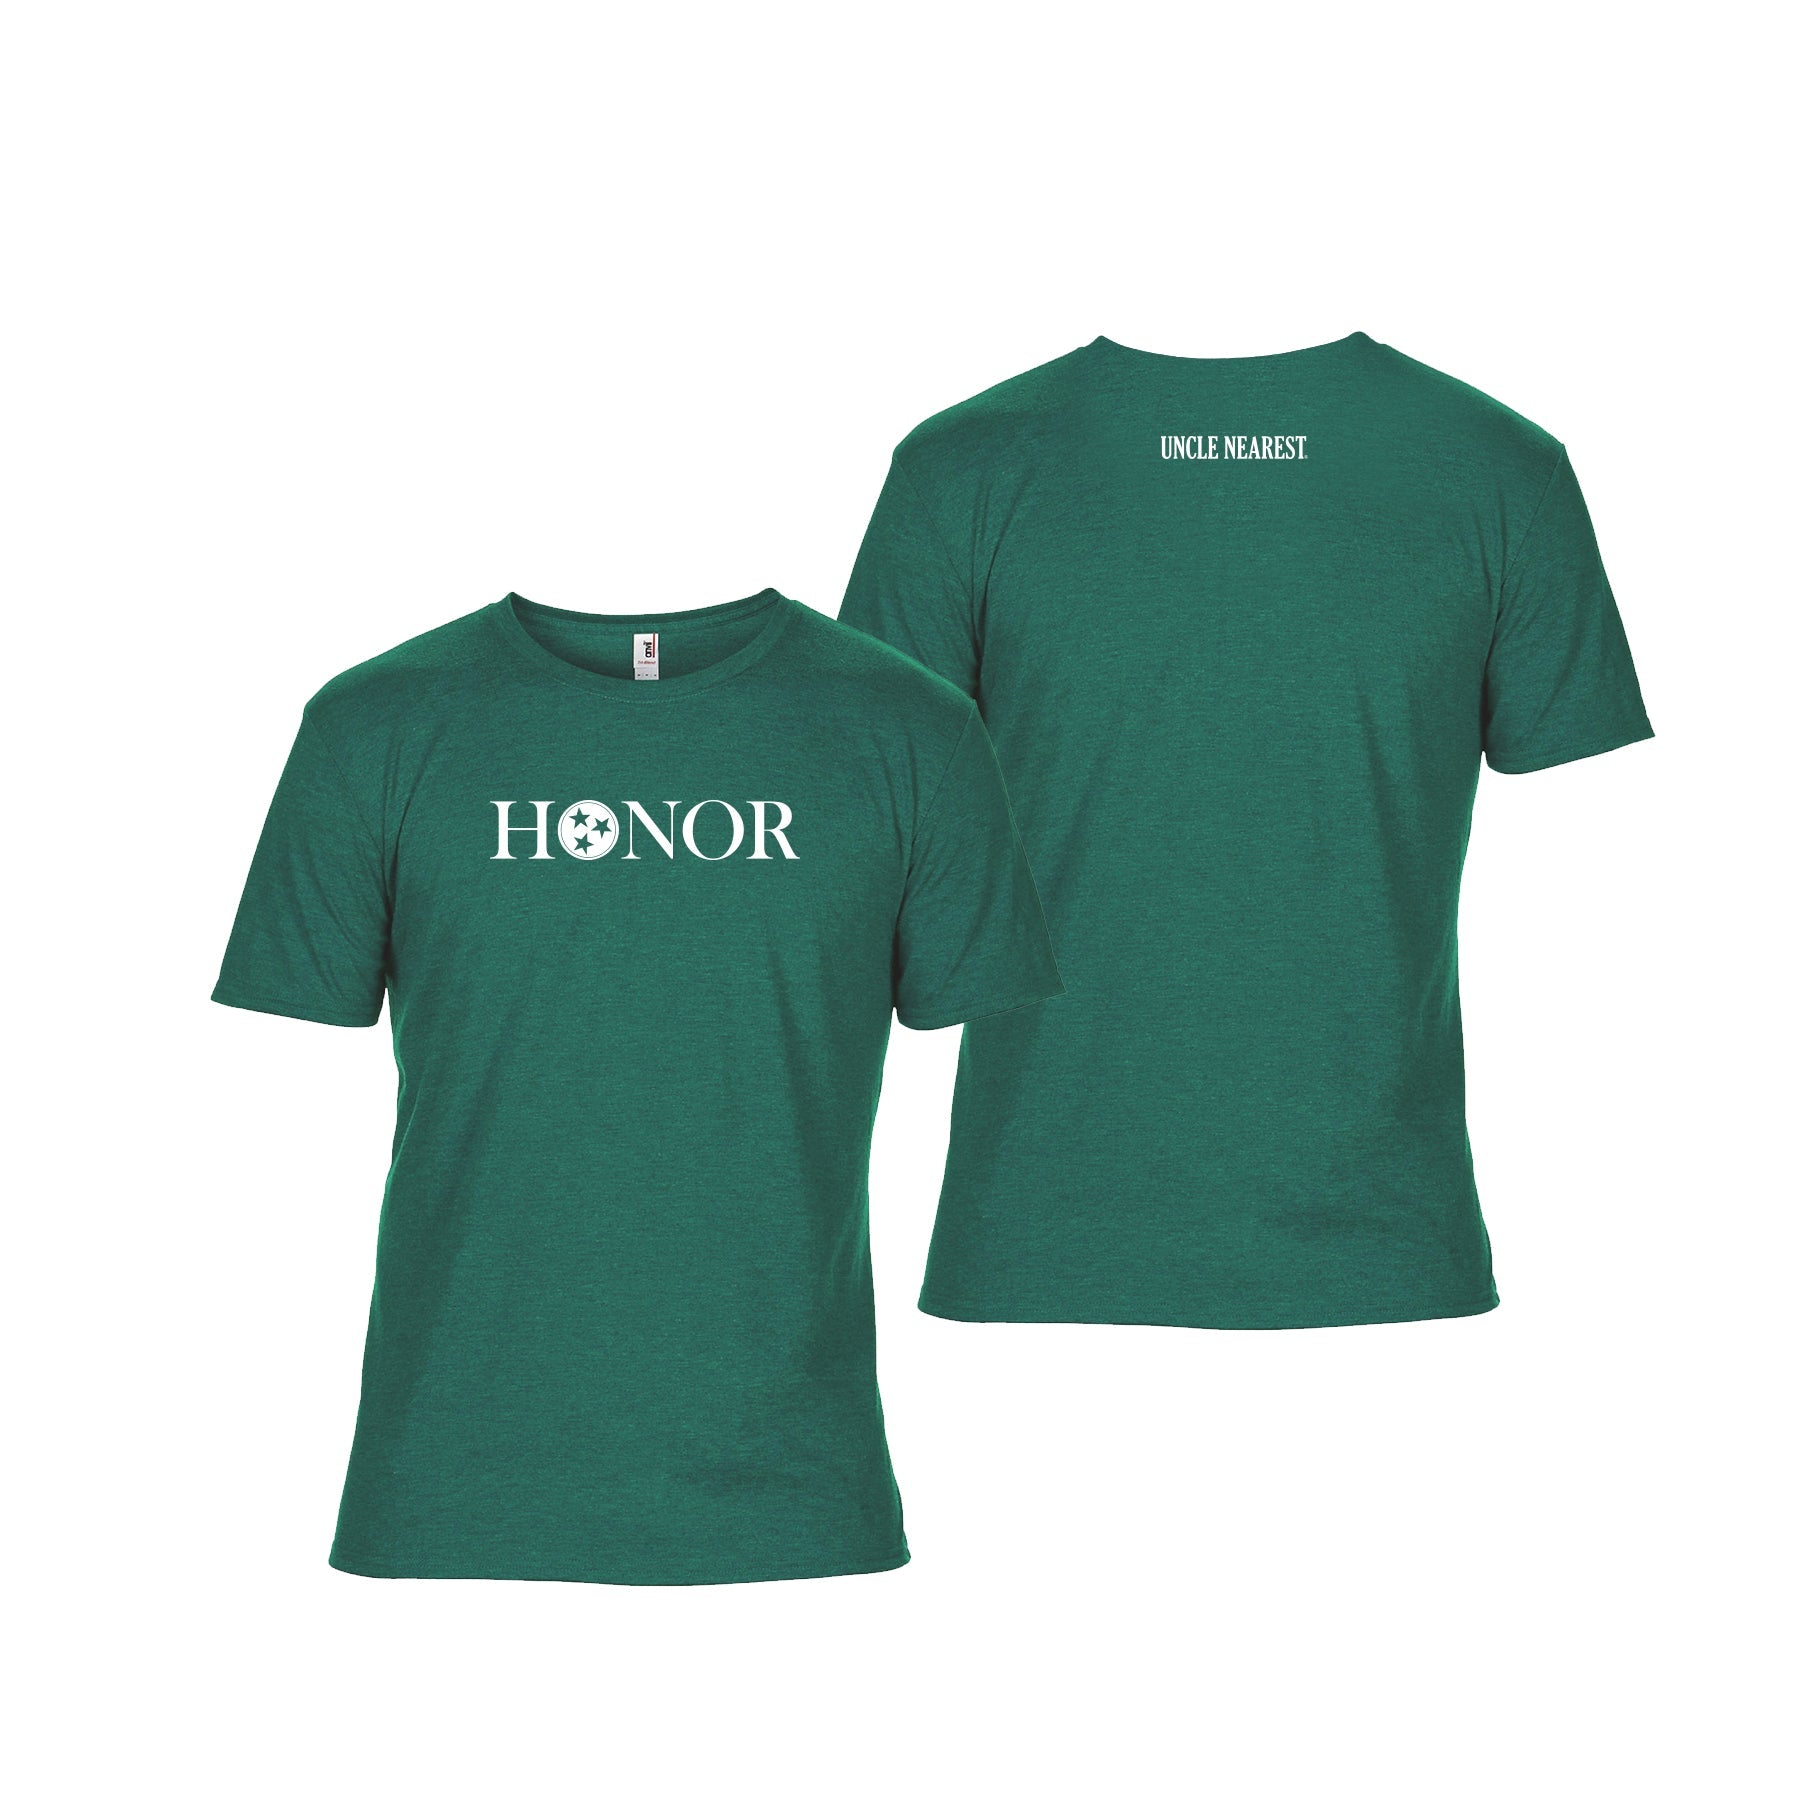 Men's HONOR Heathered Dark Green T-Shirt